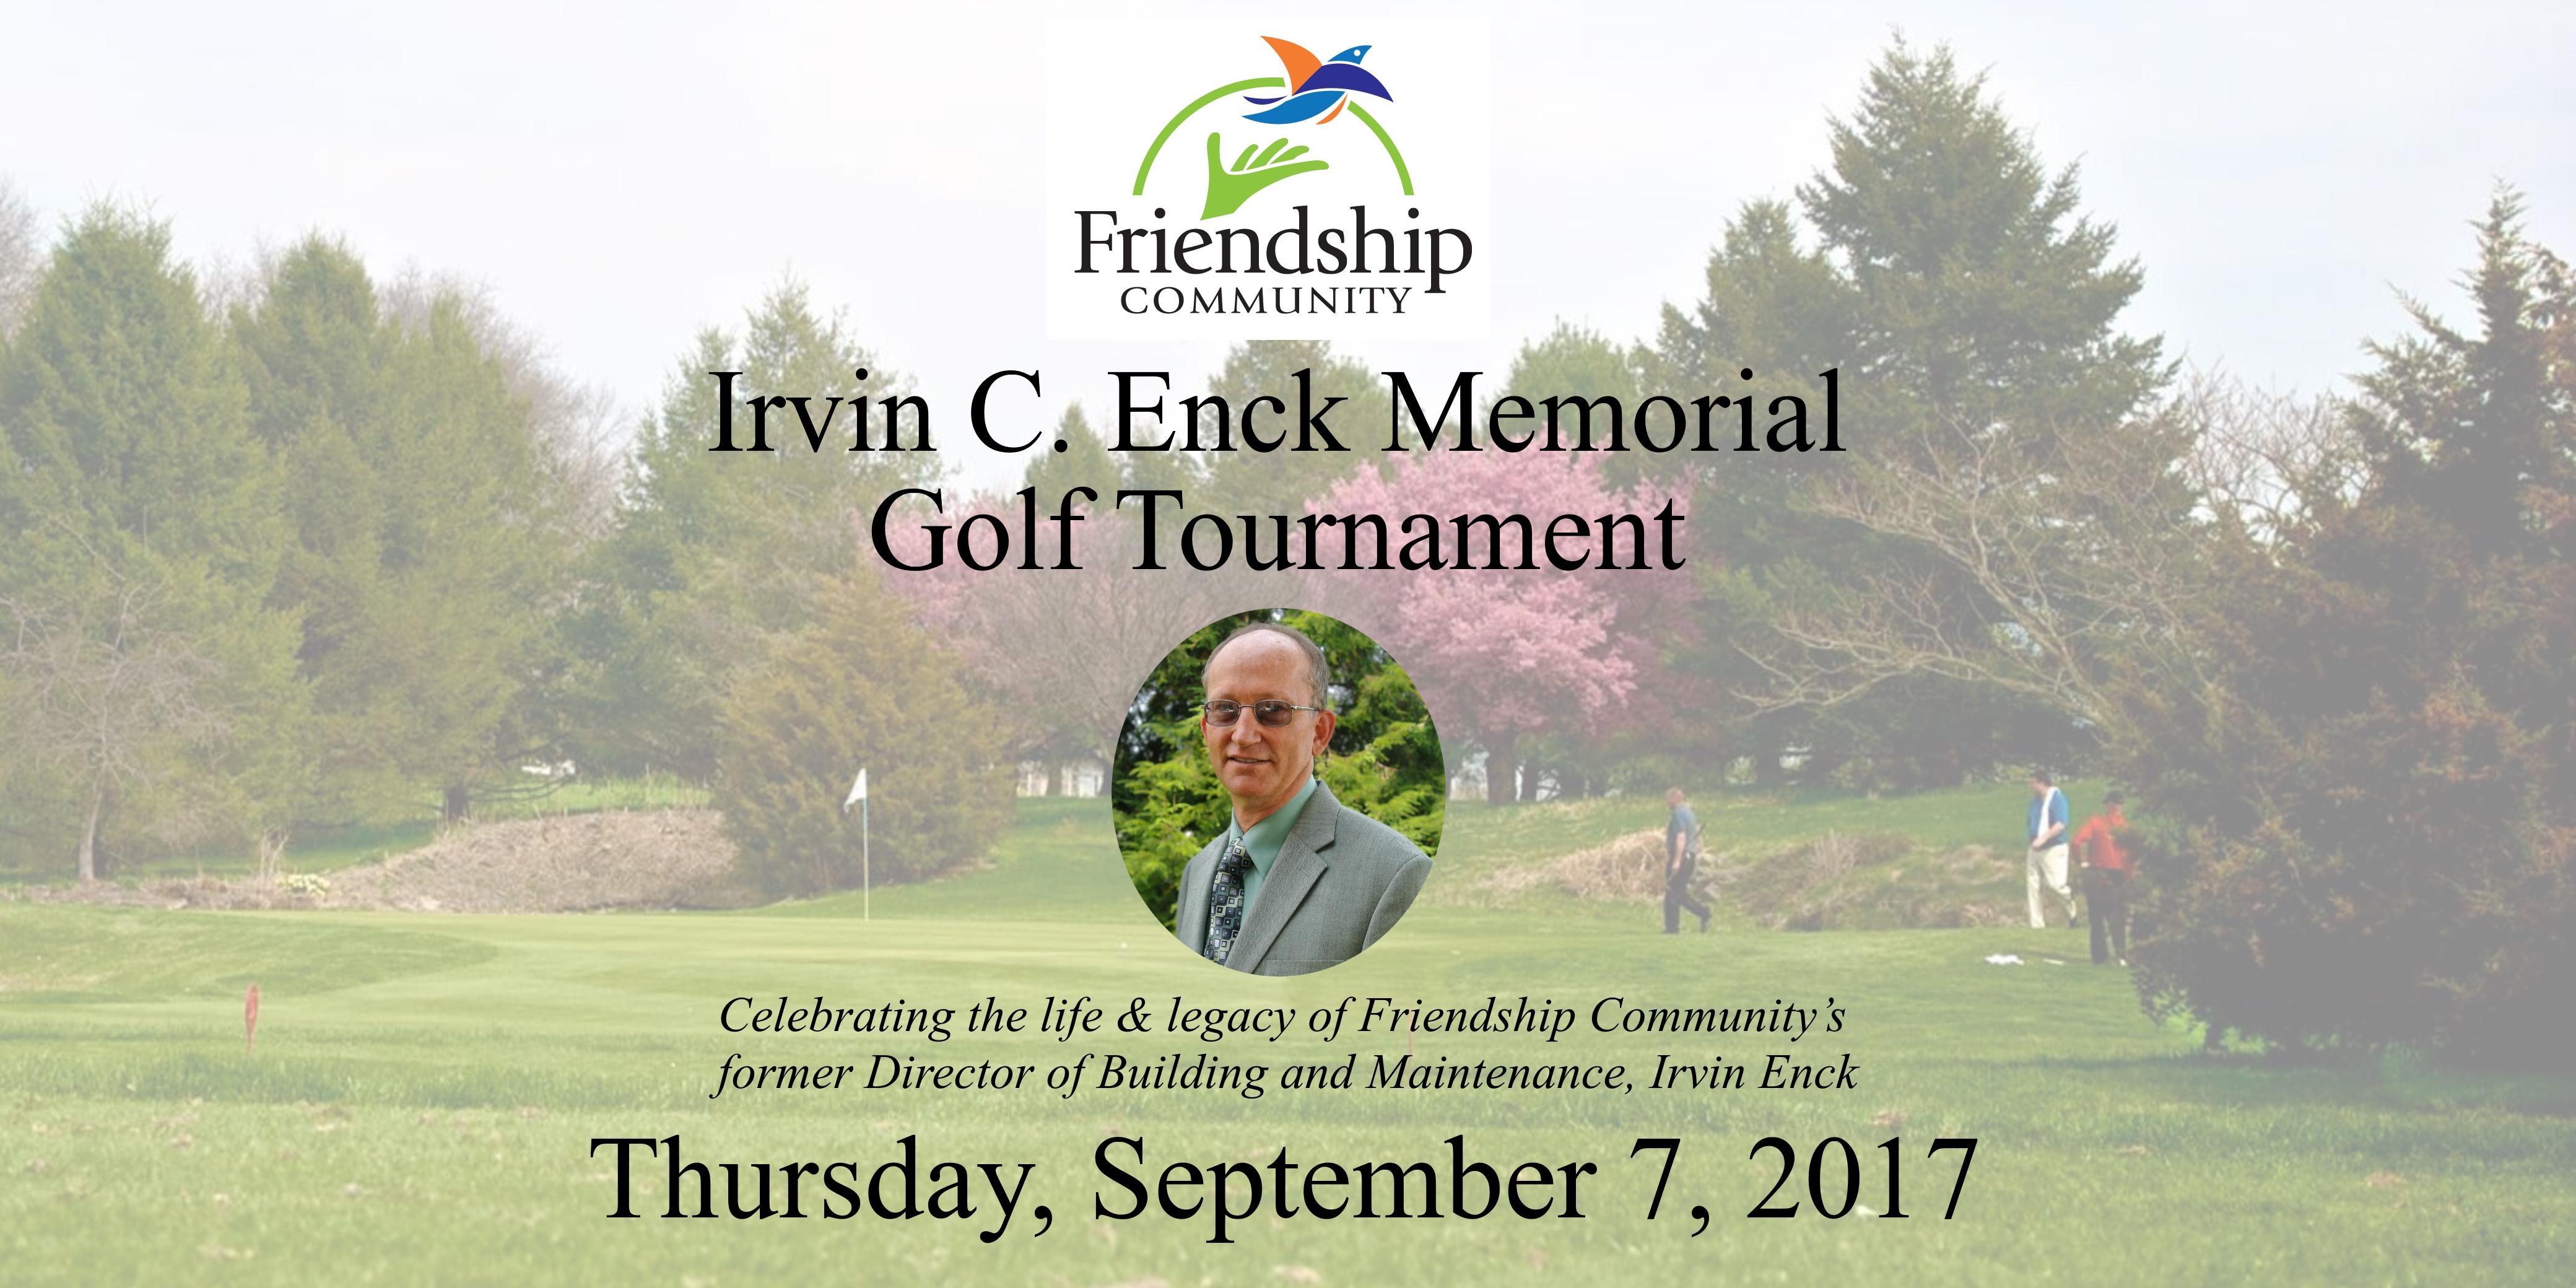 Irvin C. Enck Memorial Golf Tournament